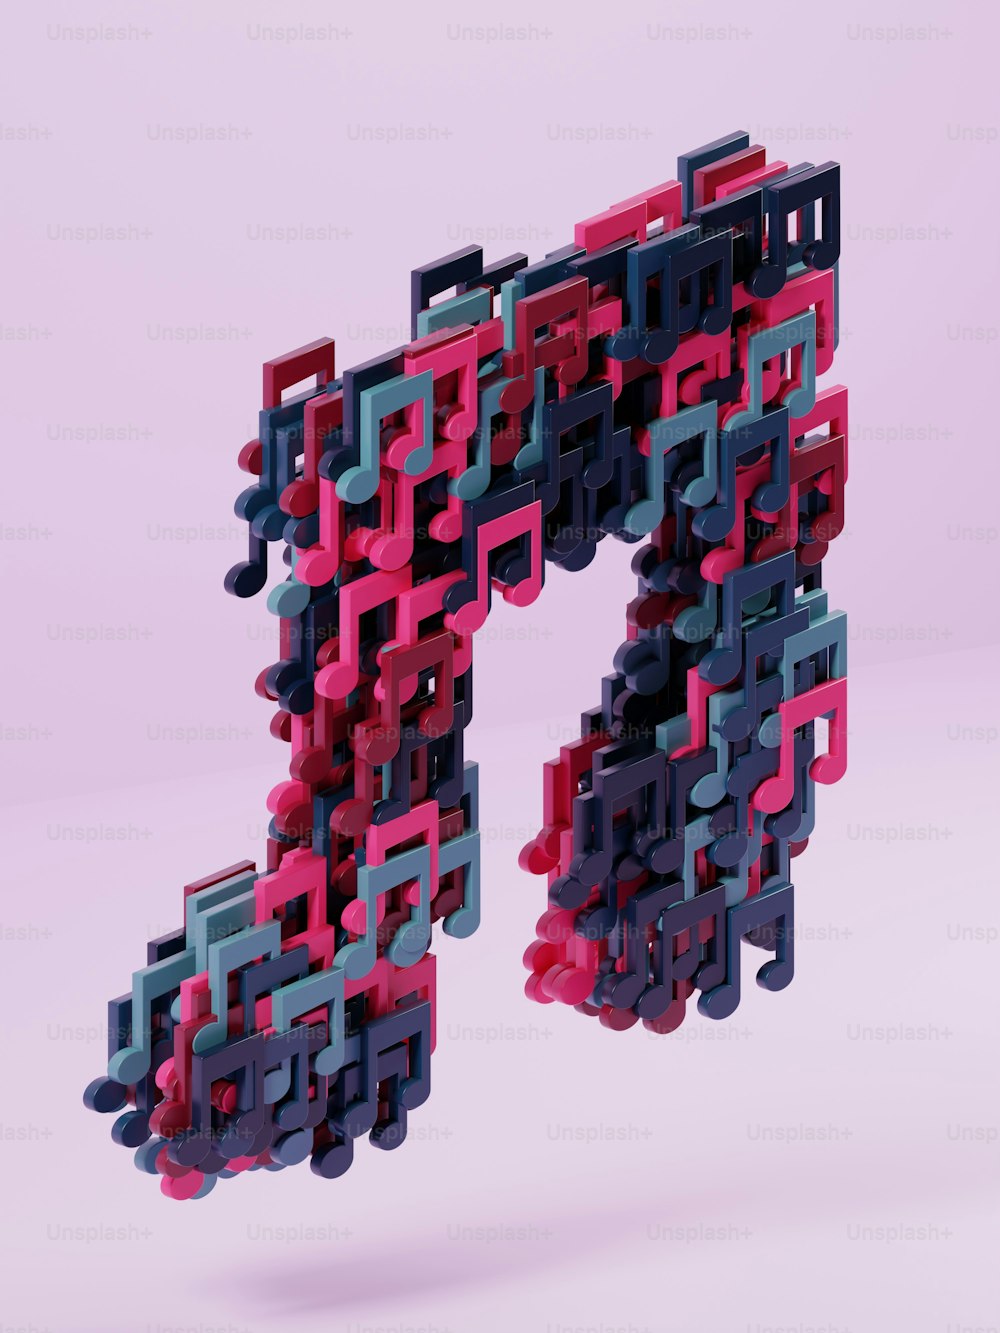 Une image 3D d’une lettre composée de blocs de différentes couleurs